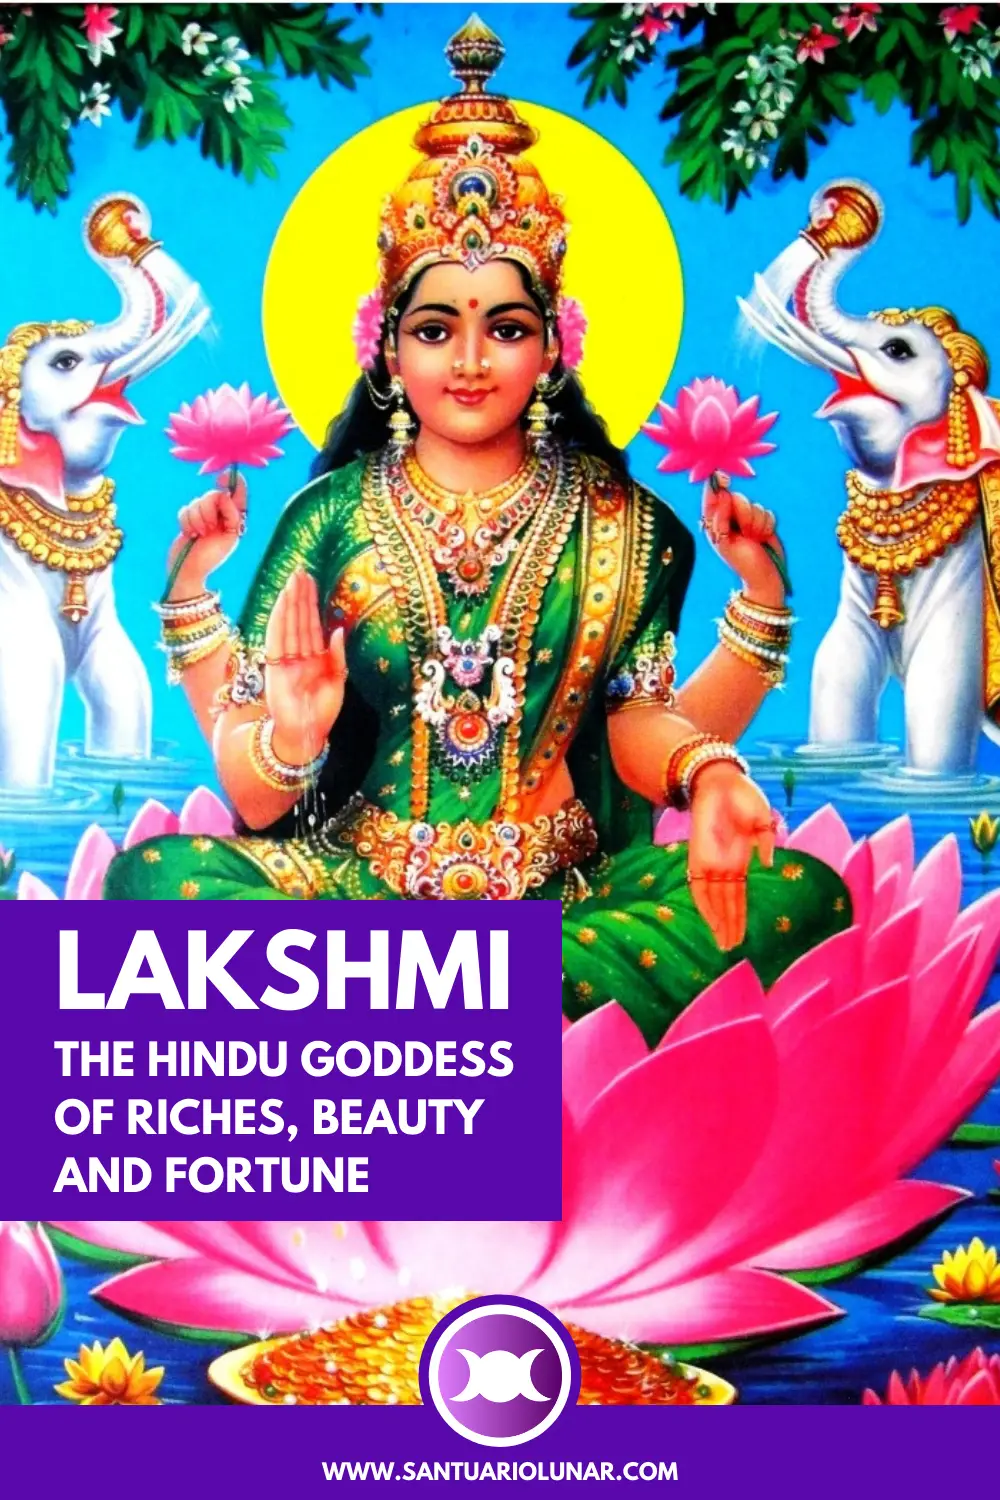 Classic Goddess Lakshmi for Pinterest